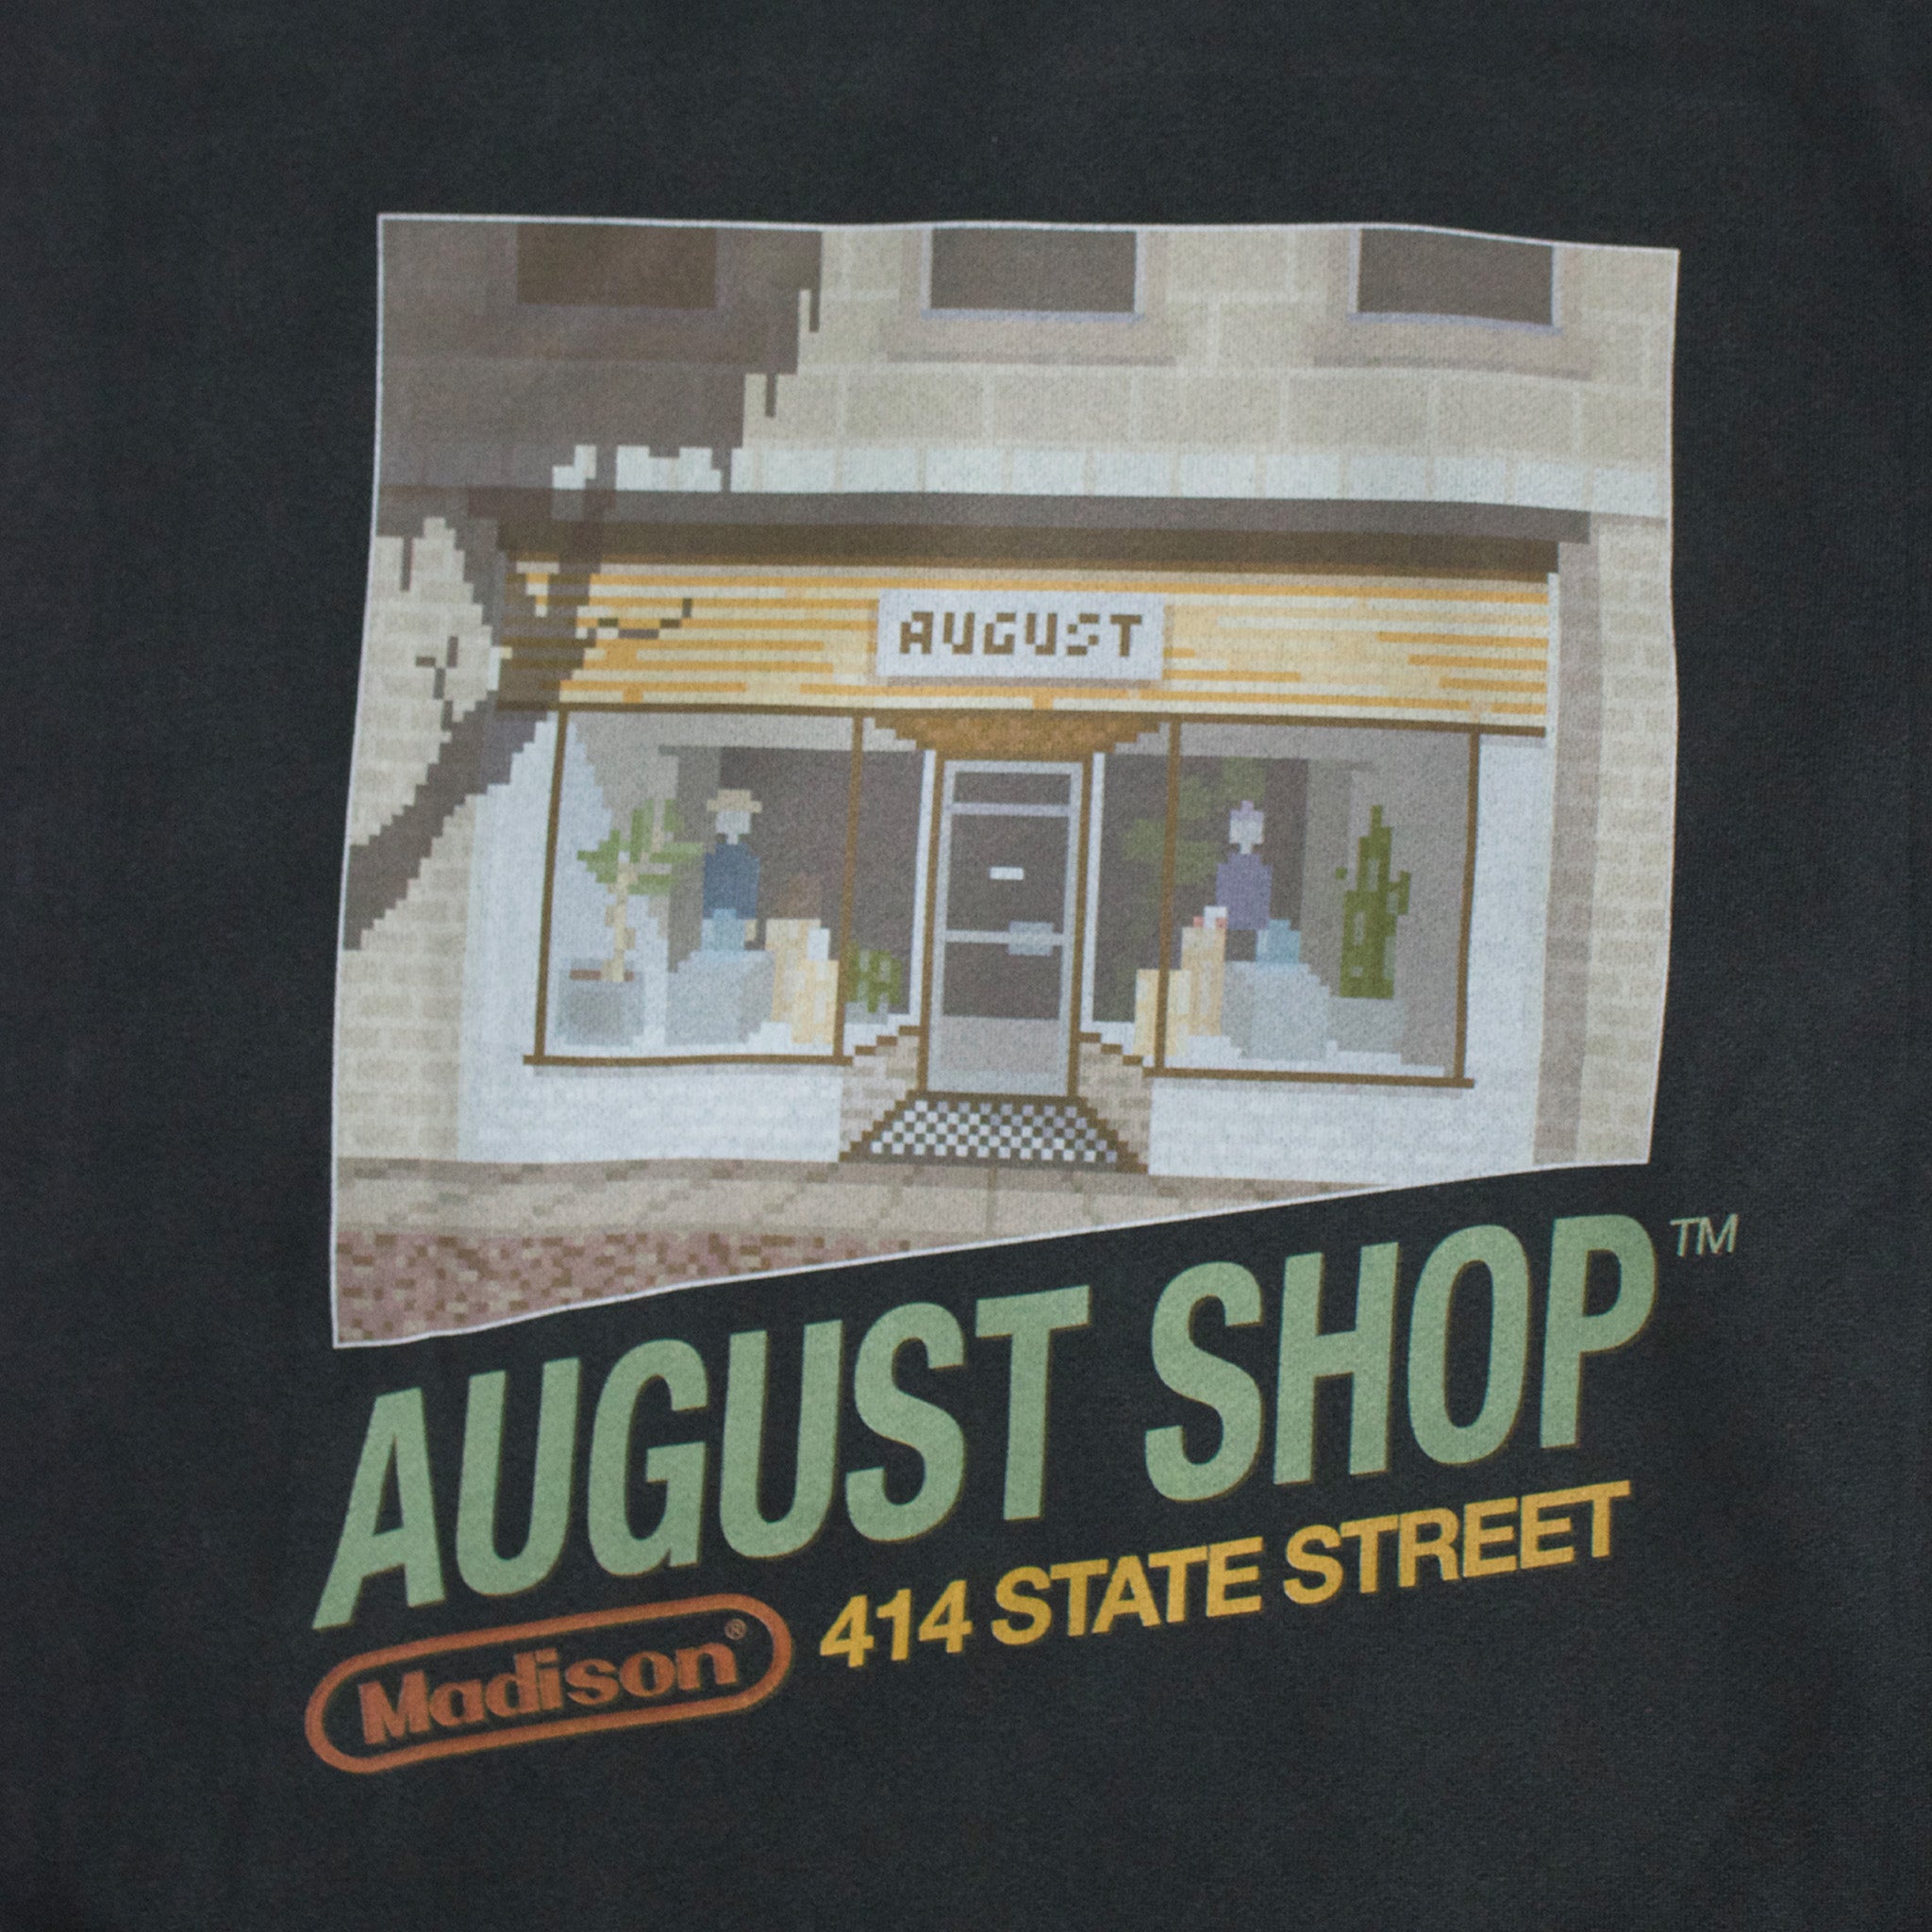 August “Black Box” Hoodie (Vintage Black) - August Shop